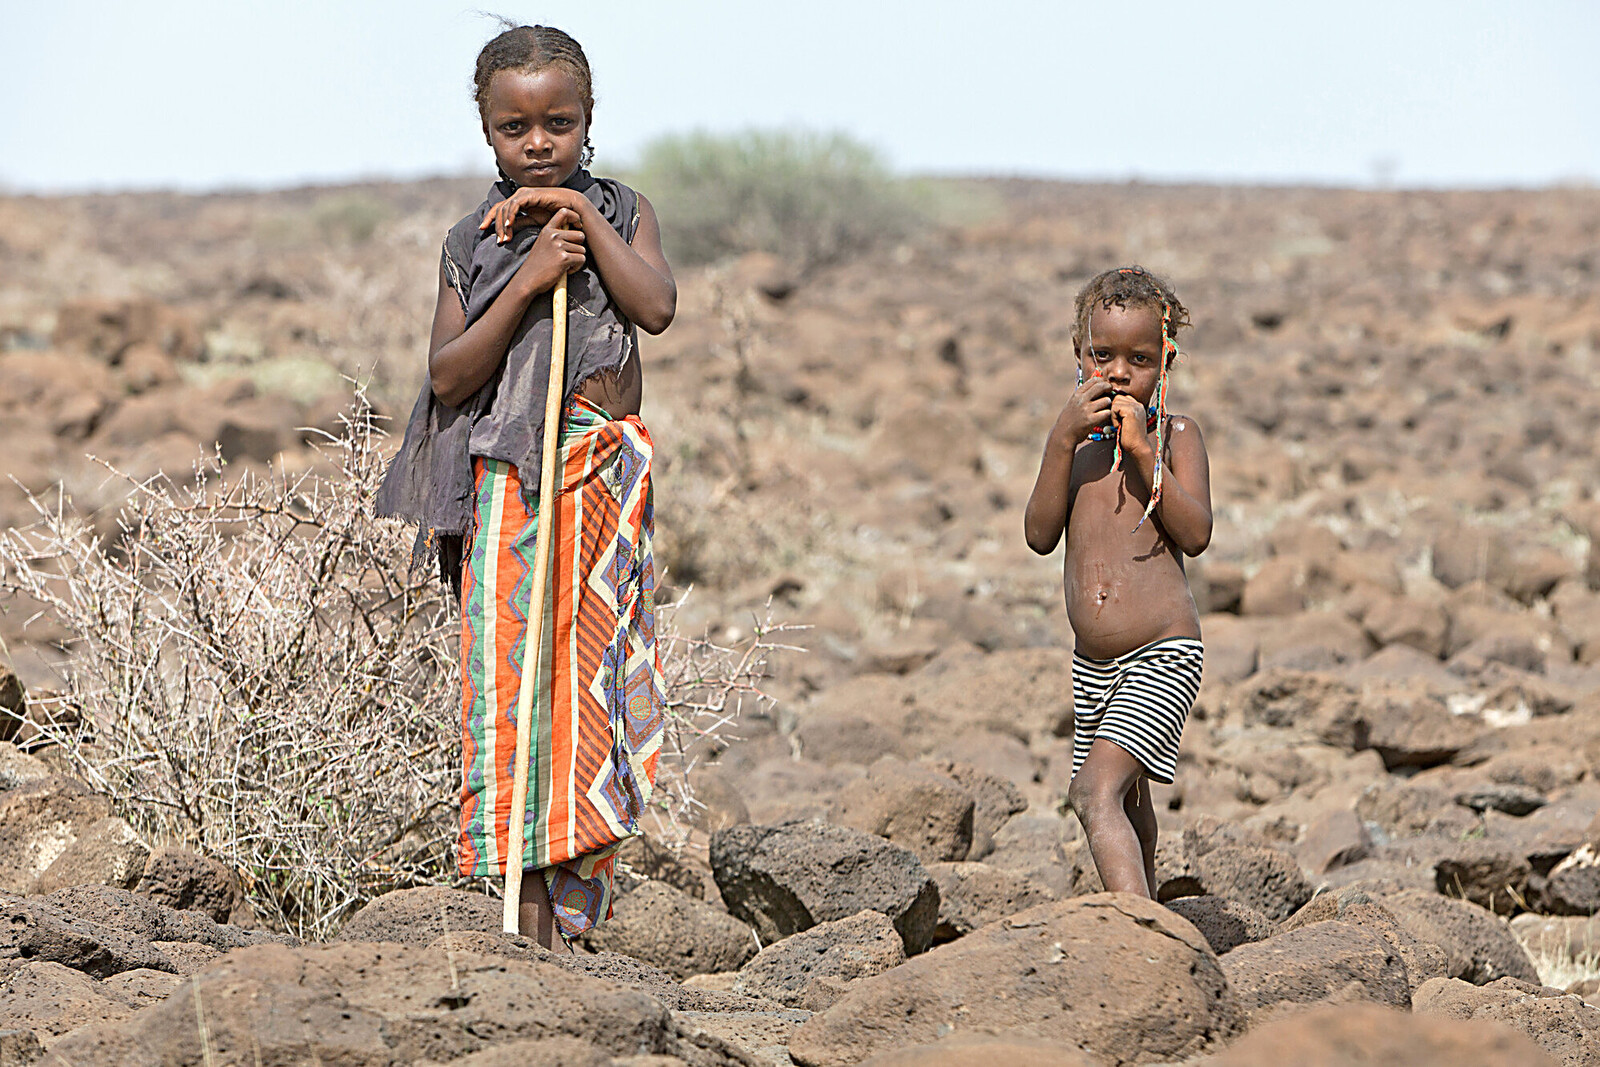 Menschen in vielen Teilen der Welt bekommen die Folgen des Klimawandels zu spüren - auch Kinder wie diese in Äthiopien